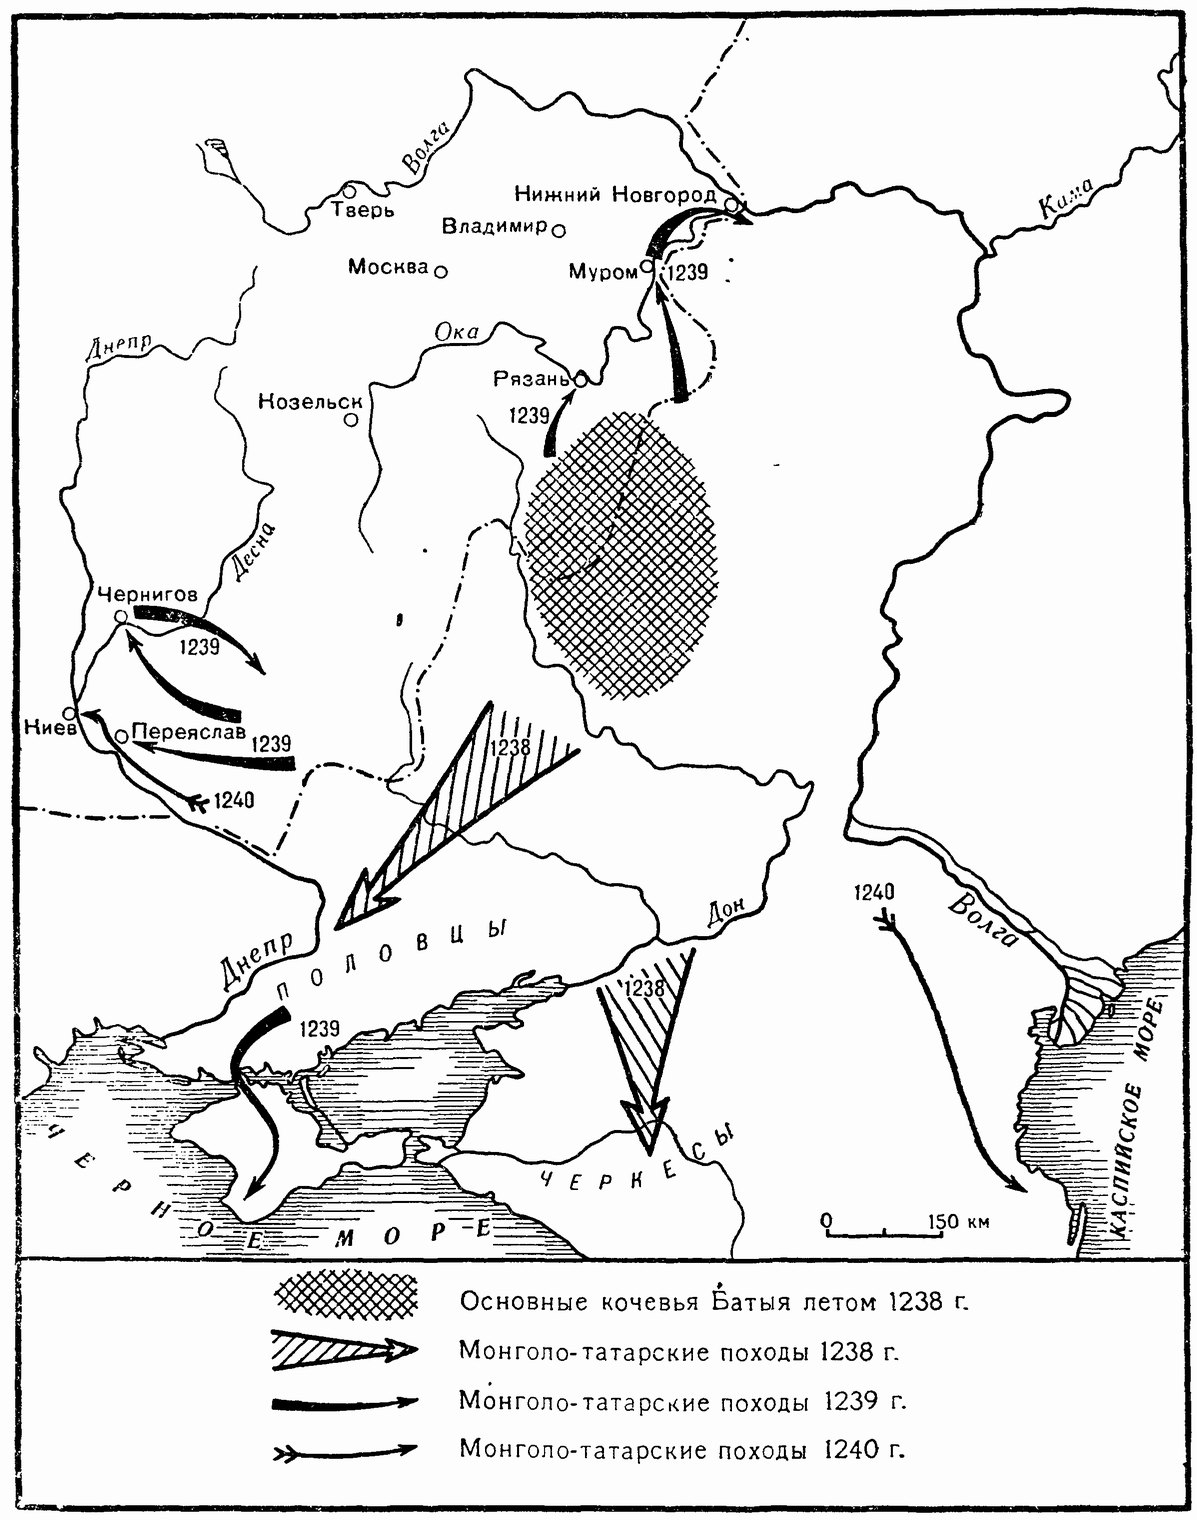 Монголо-татары в половецких степях. Лето 1238 — осень 1240 г